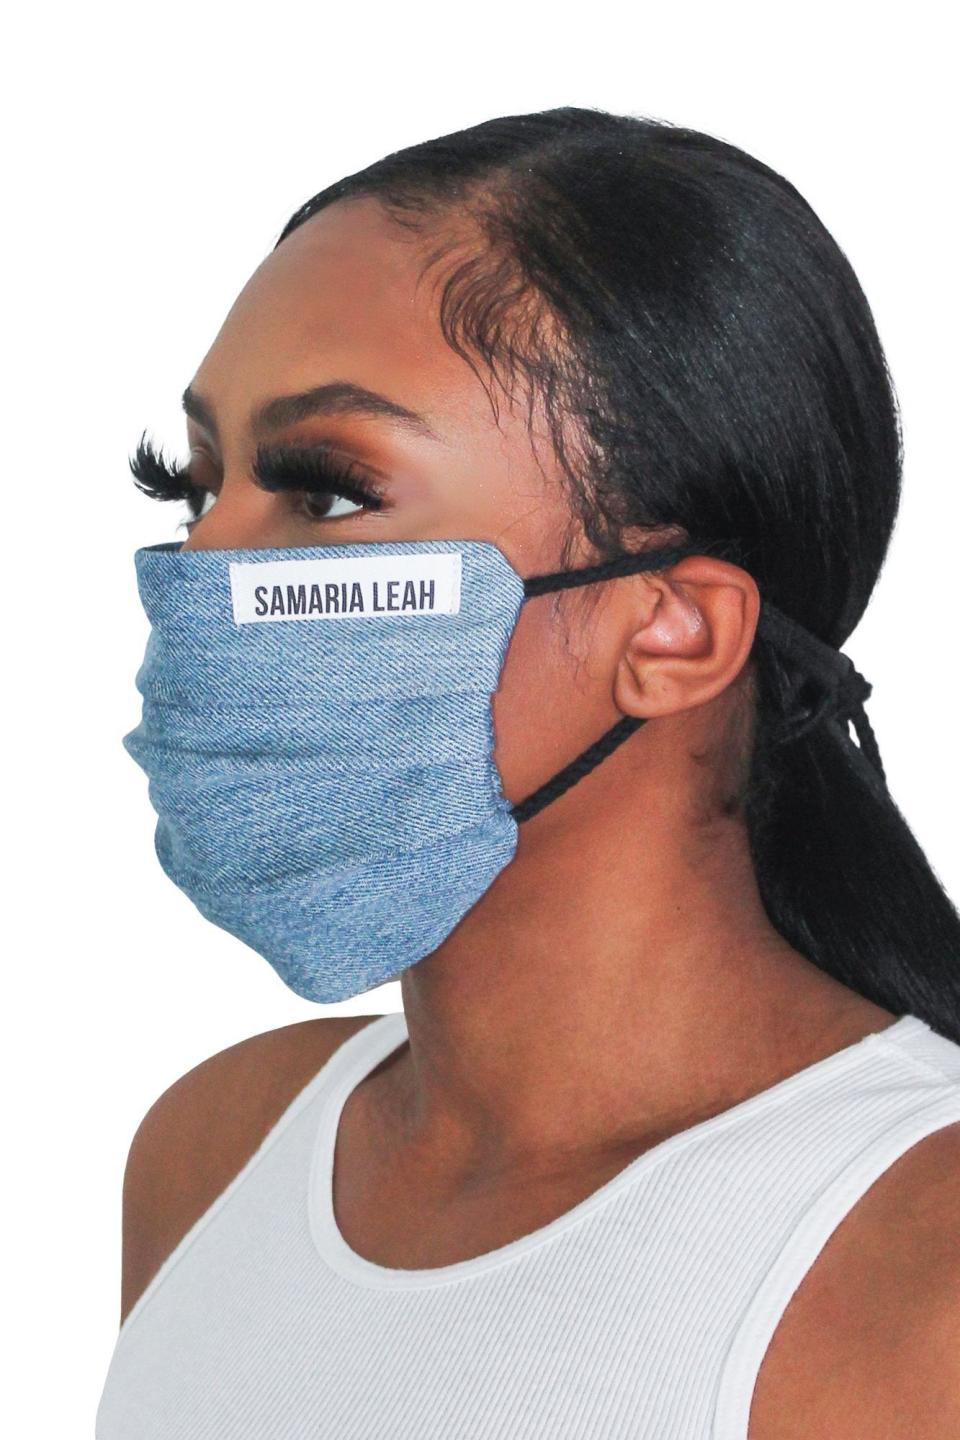 6) Samaria Leah Face Mask